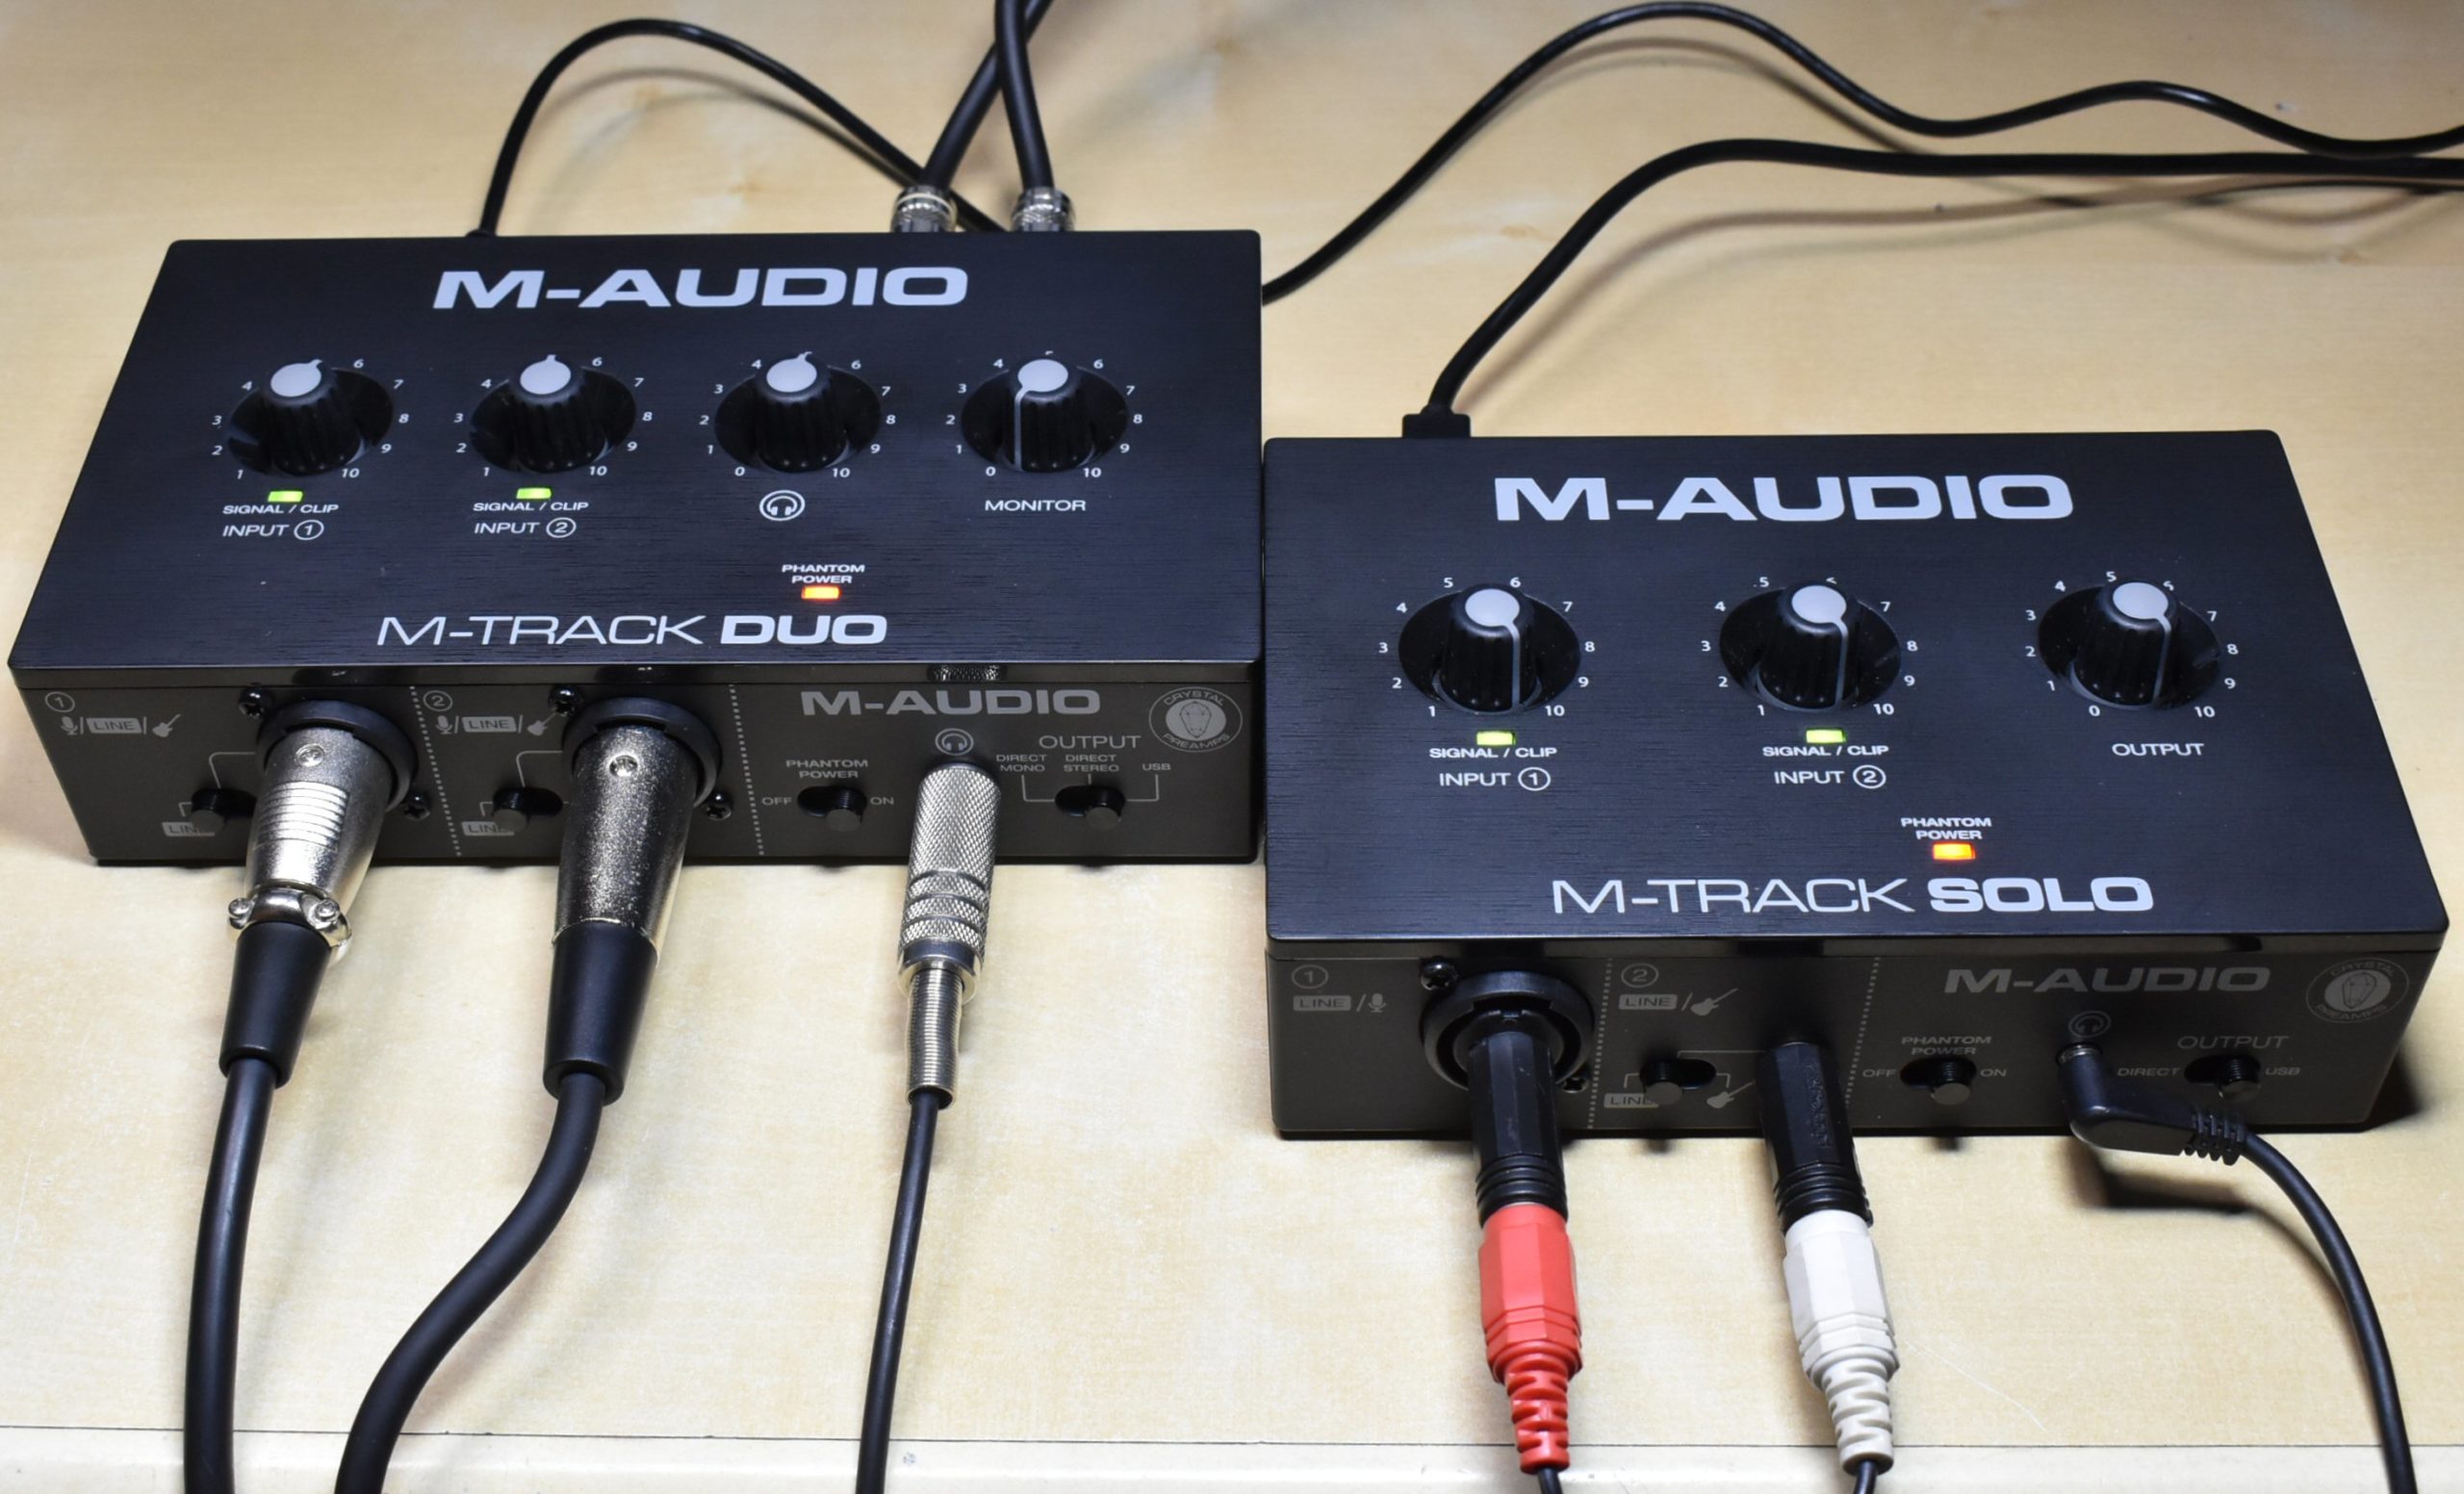 M-Audioの激安オーディオインターフェイス、5,000円のM-Track Solo、6,000円のM-Track Duoは使えるのか、試してみた!  | 藤本健の “DTMステーション”